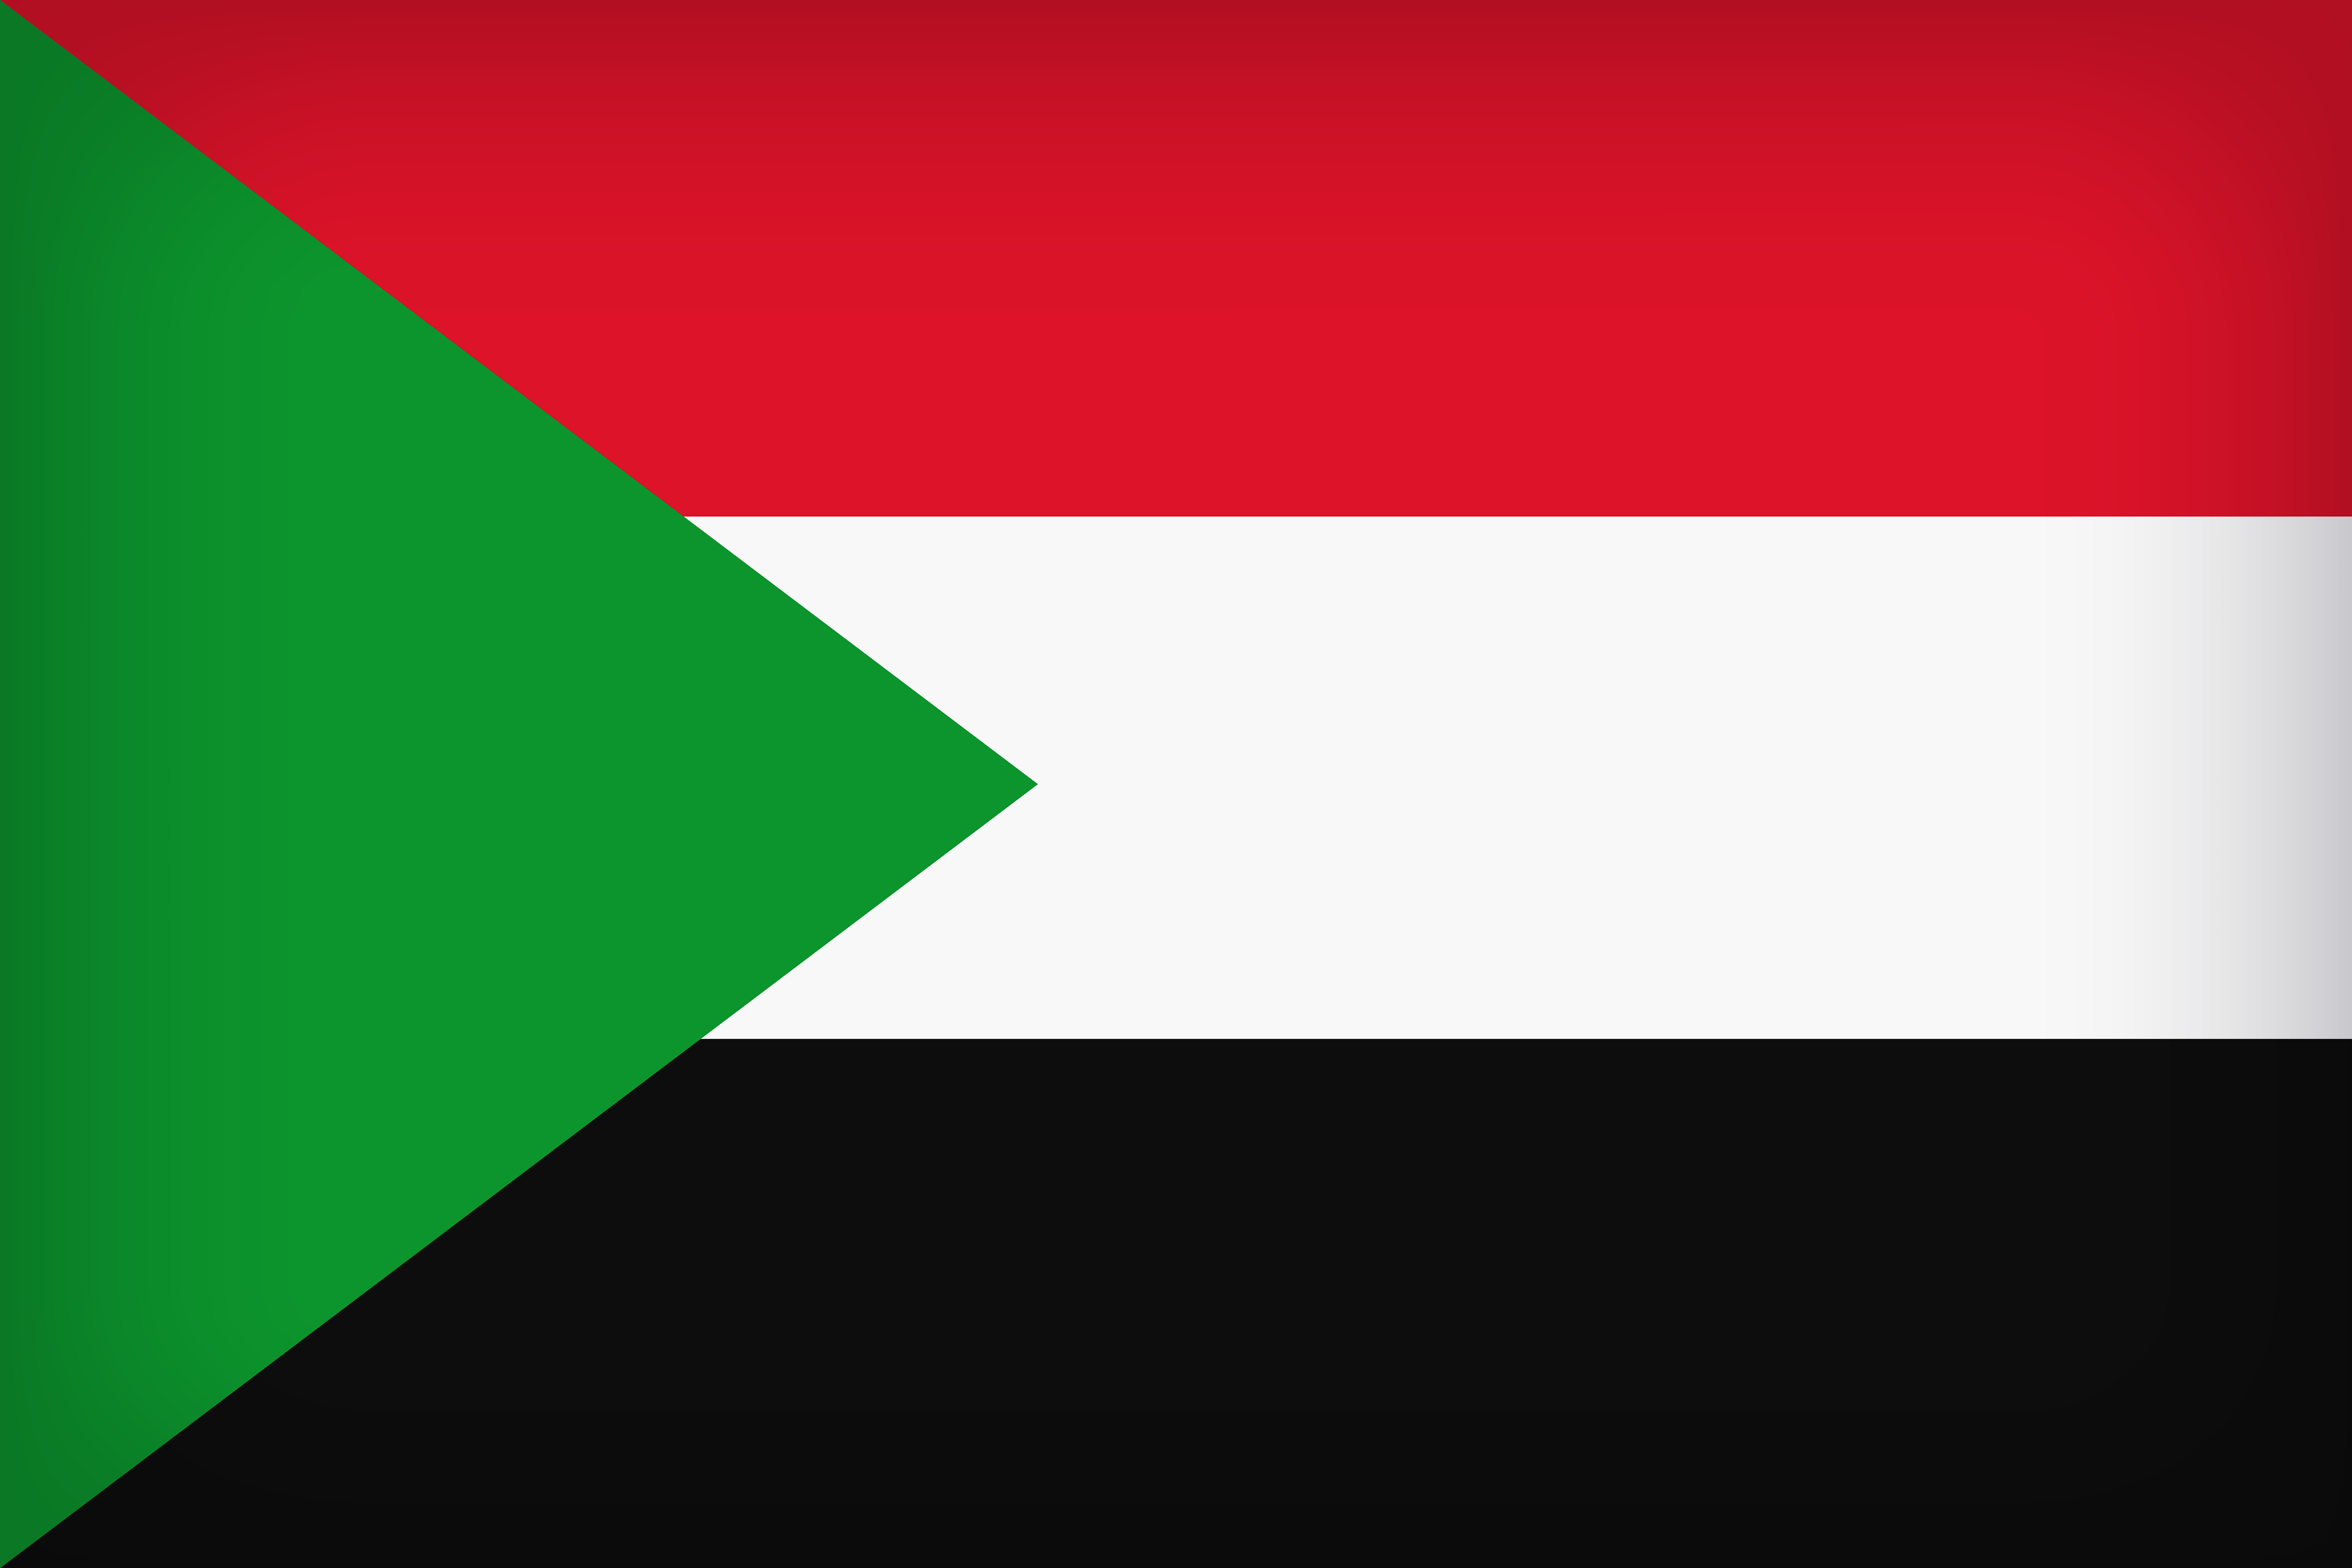 Sudan Large Flag Quality Image